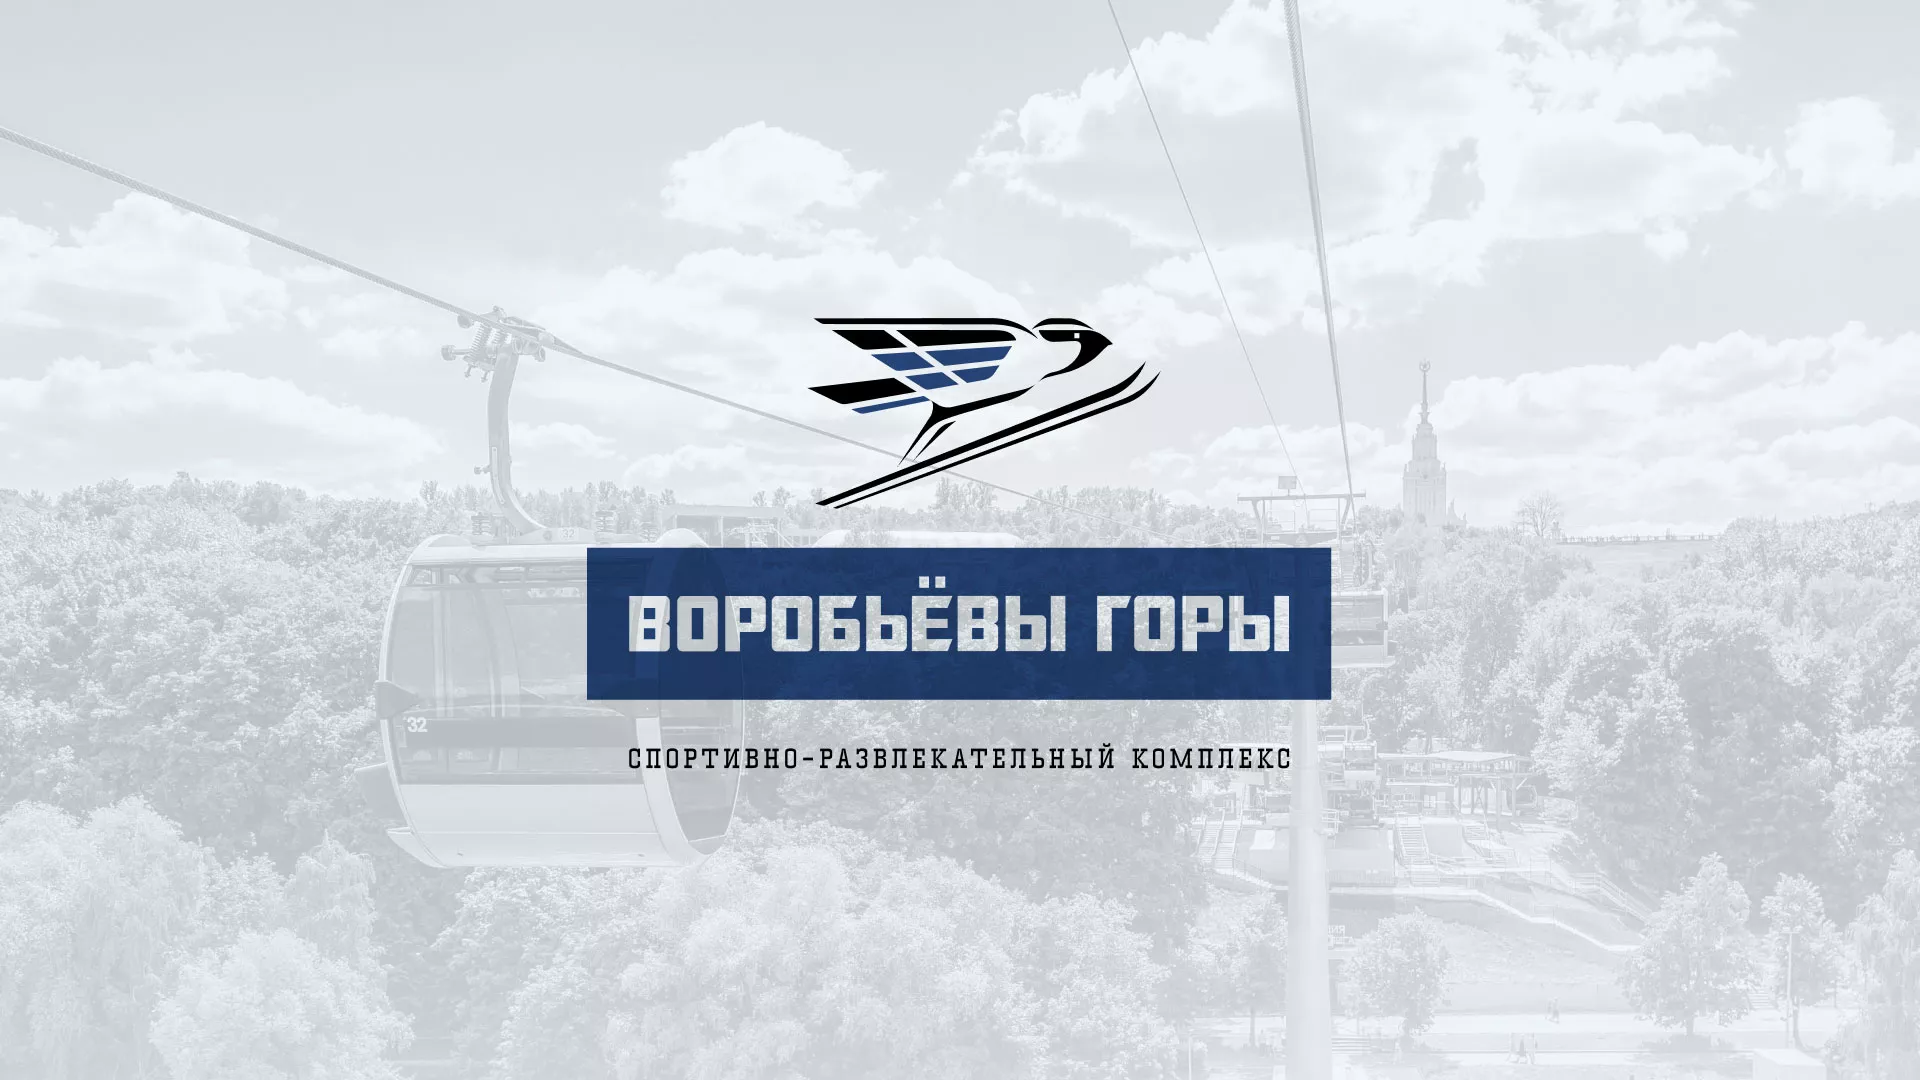 Разработка сайта в Вольске для спортивно-развлекательного комплекса «Воробьёвы горы»